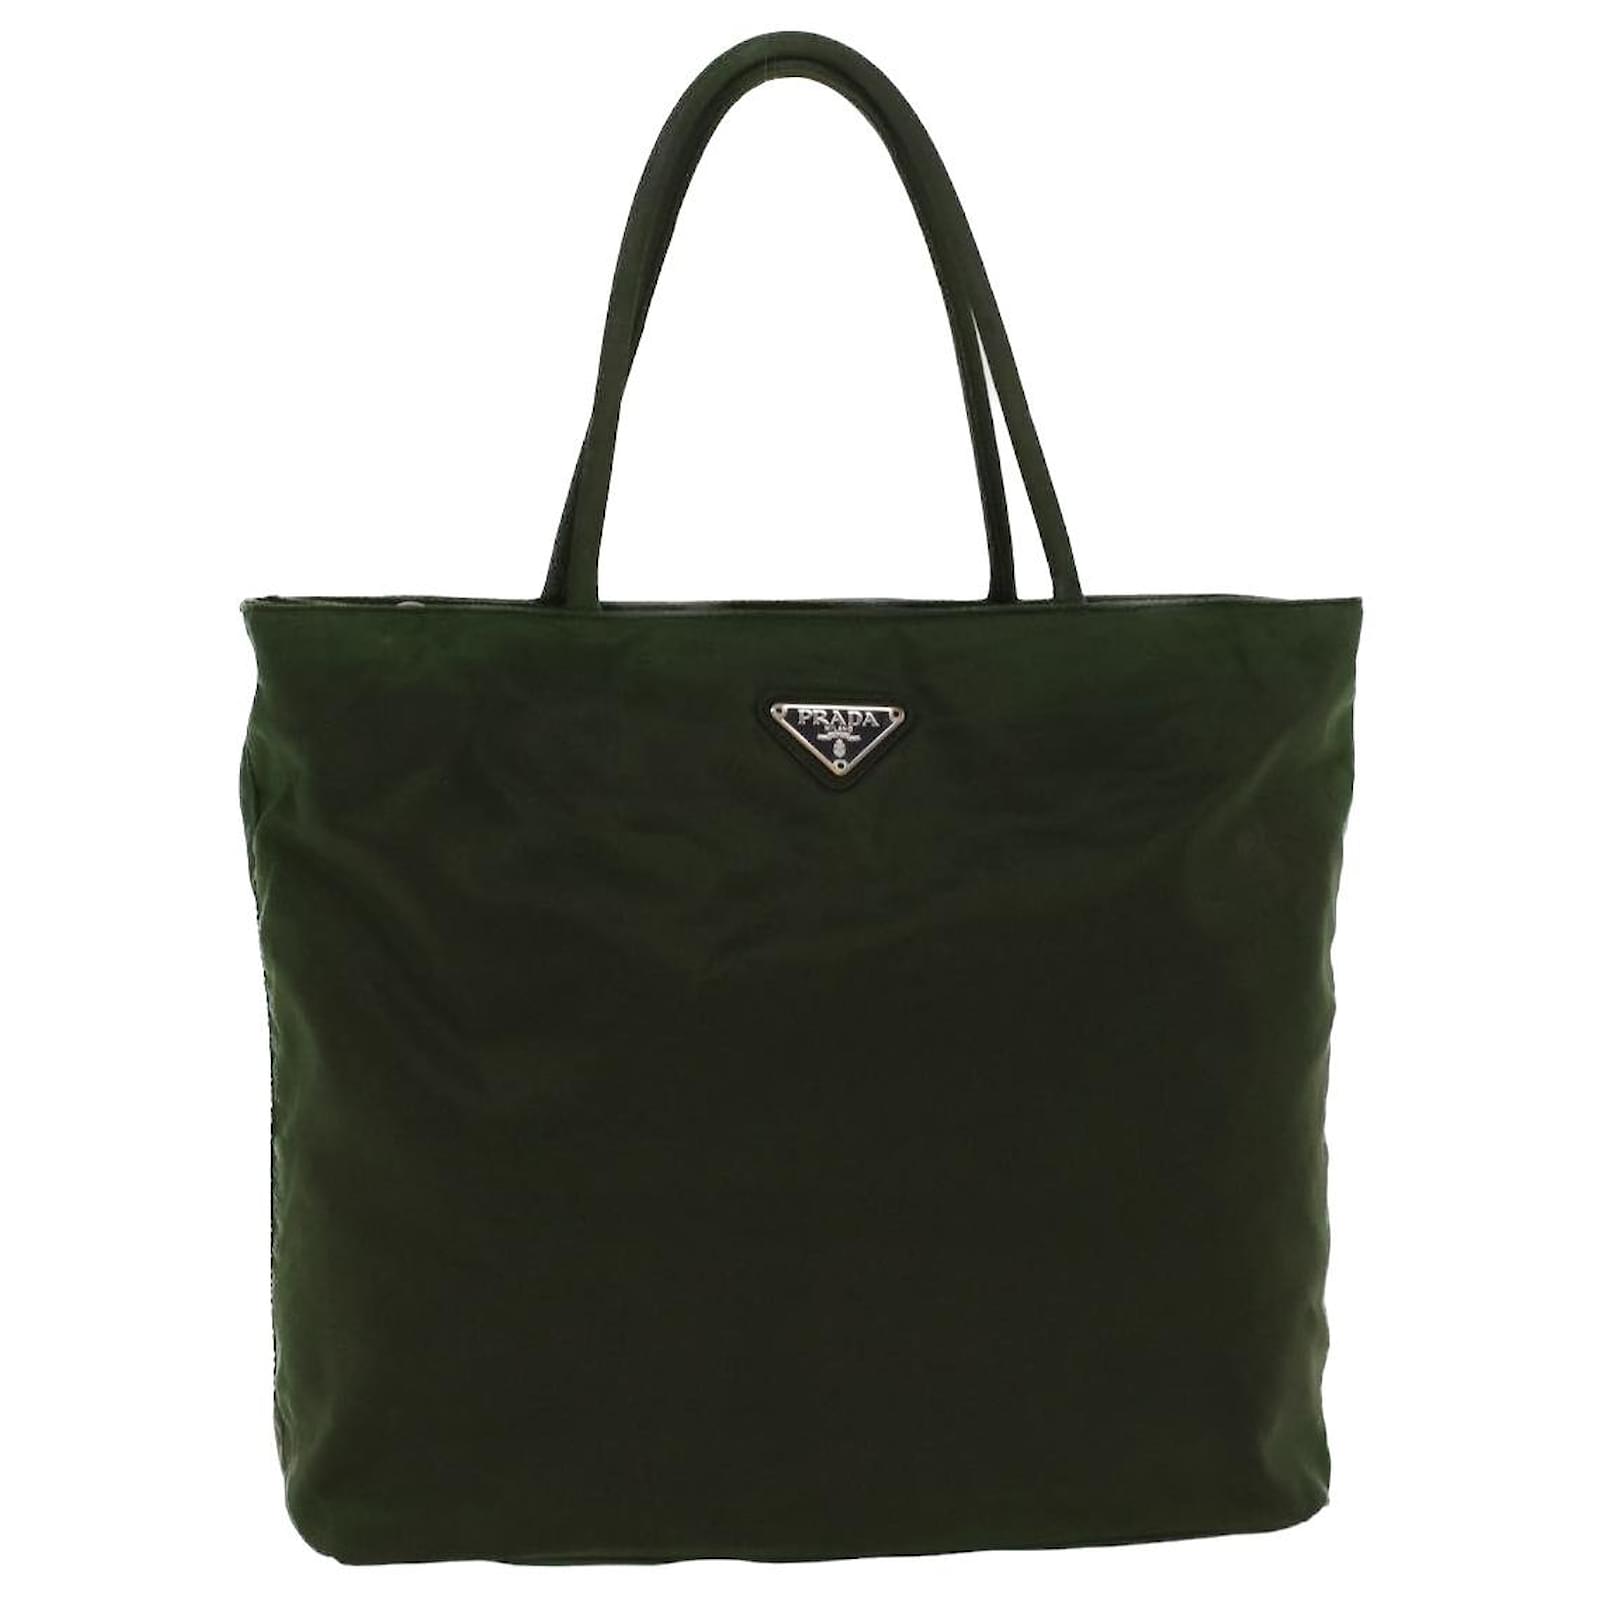 Lacoste Green Nylon Tote Bag